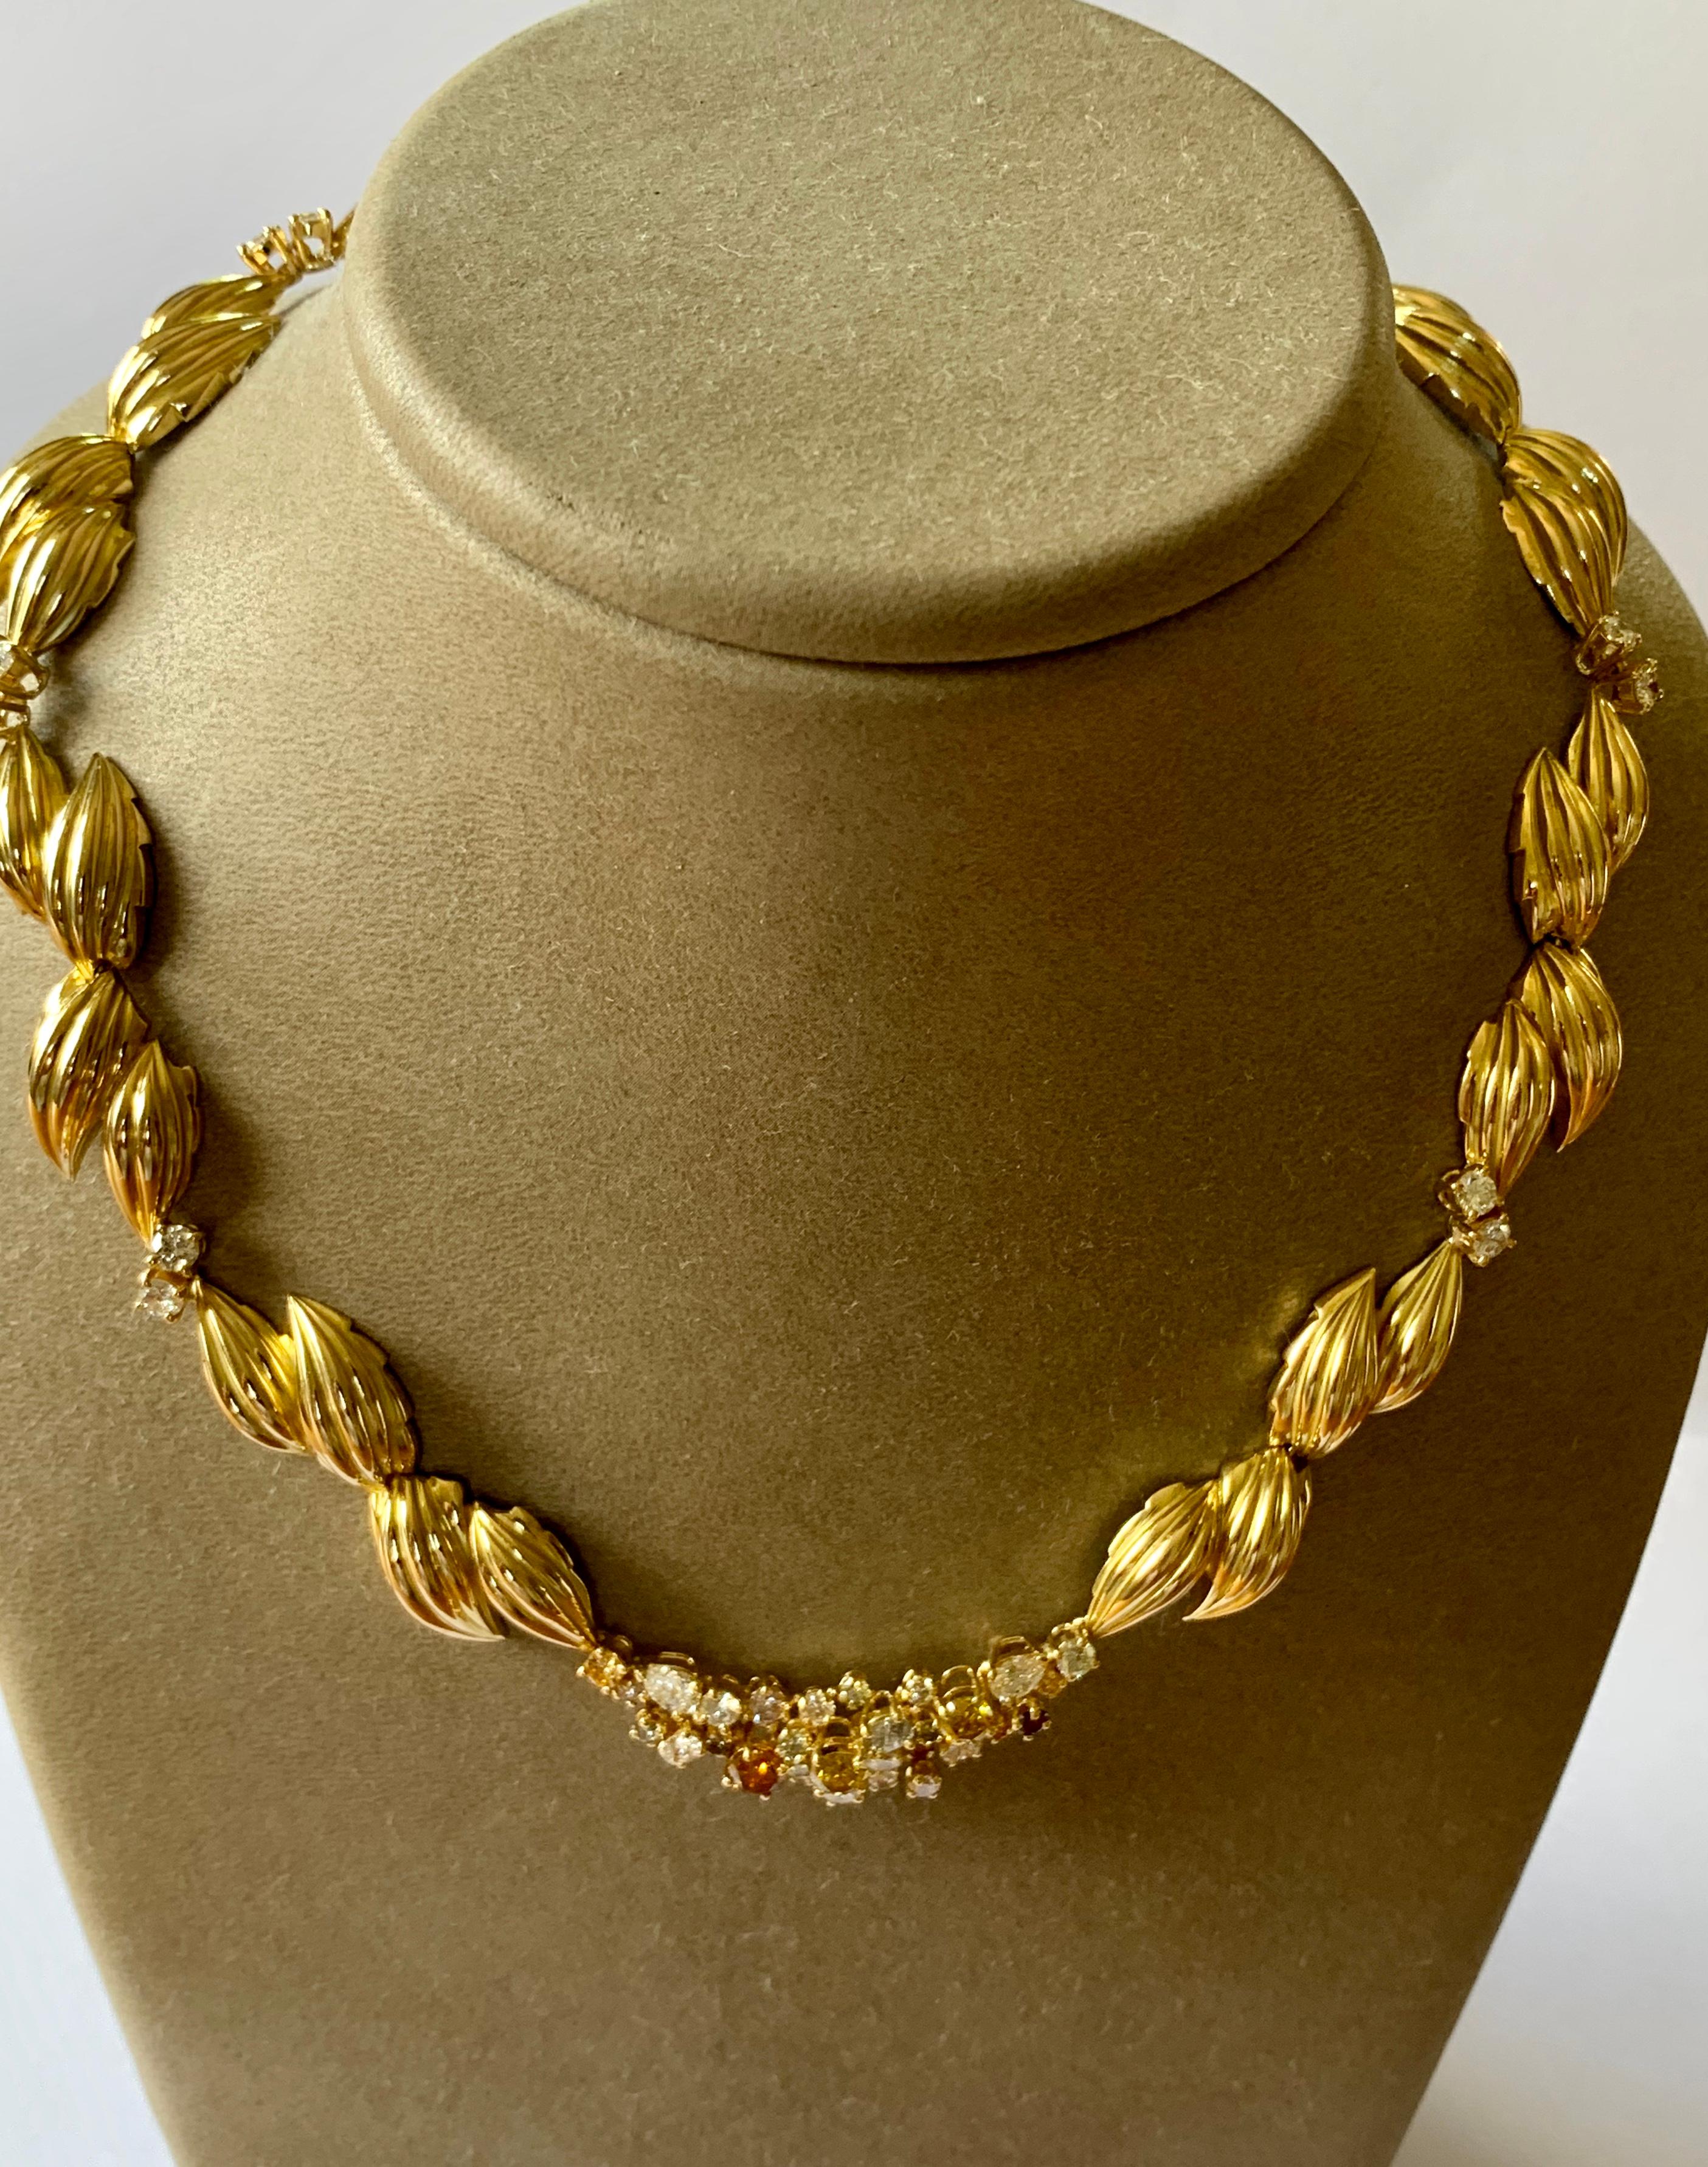 Un collier magistral avec un motif de feuille en or jaune 18 carats massif. Elle est rehaussée de 46 diamants blancs et de couleur fantaisie pesant environ 5,60 ct. Le collier mesure environ 16 pouces de long sur 3/4 de pouce de large. Cette pièce